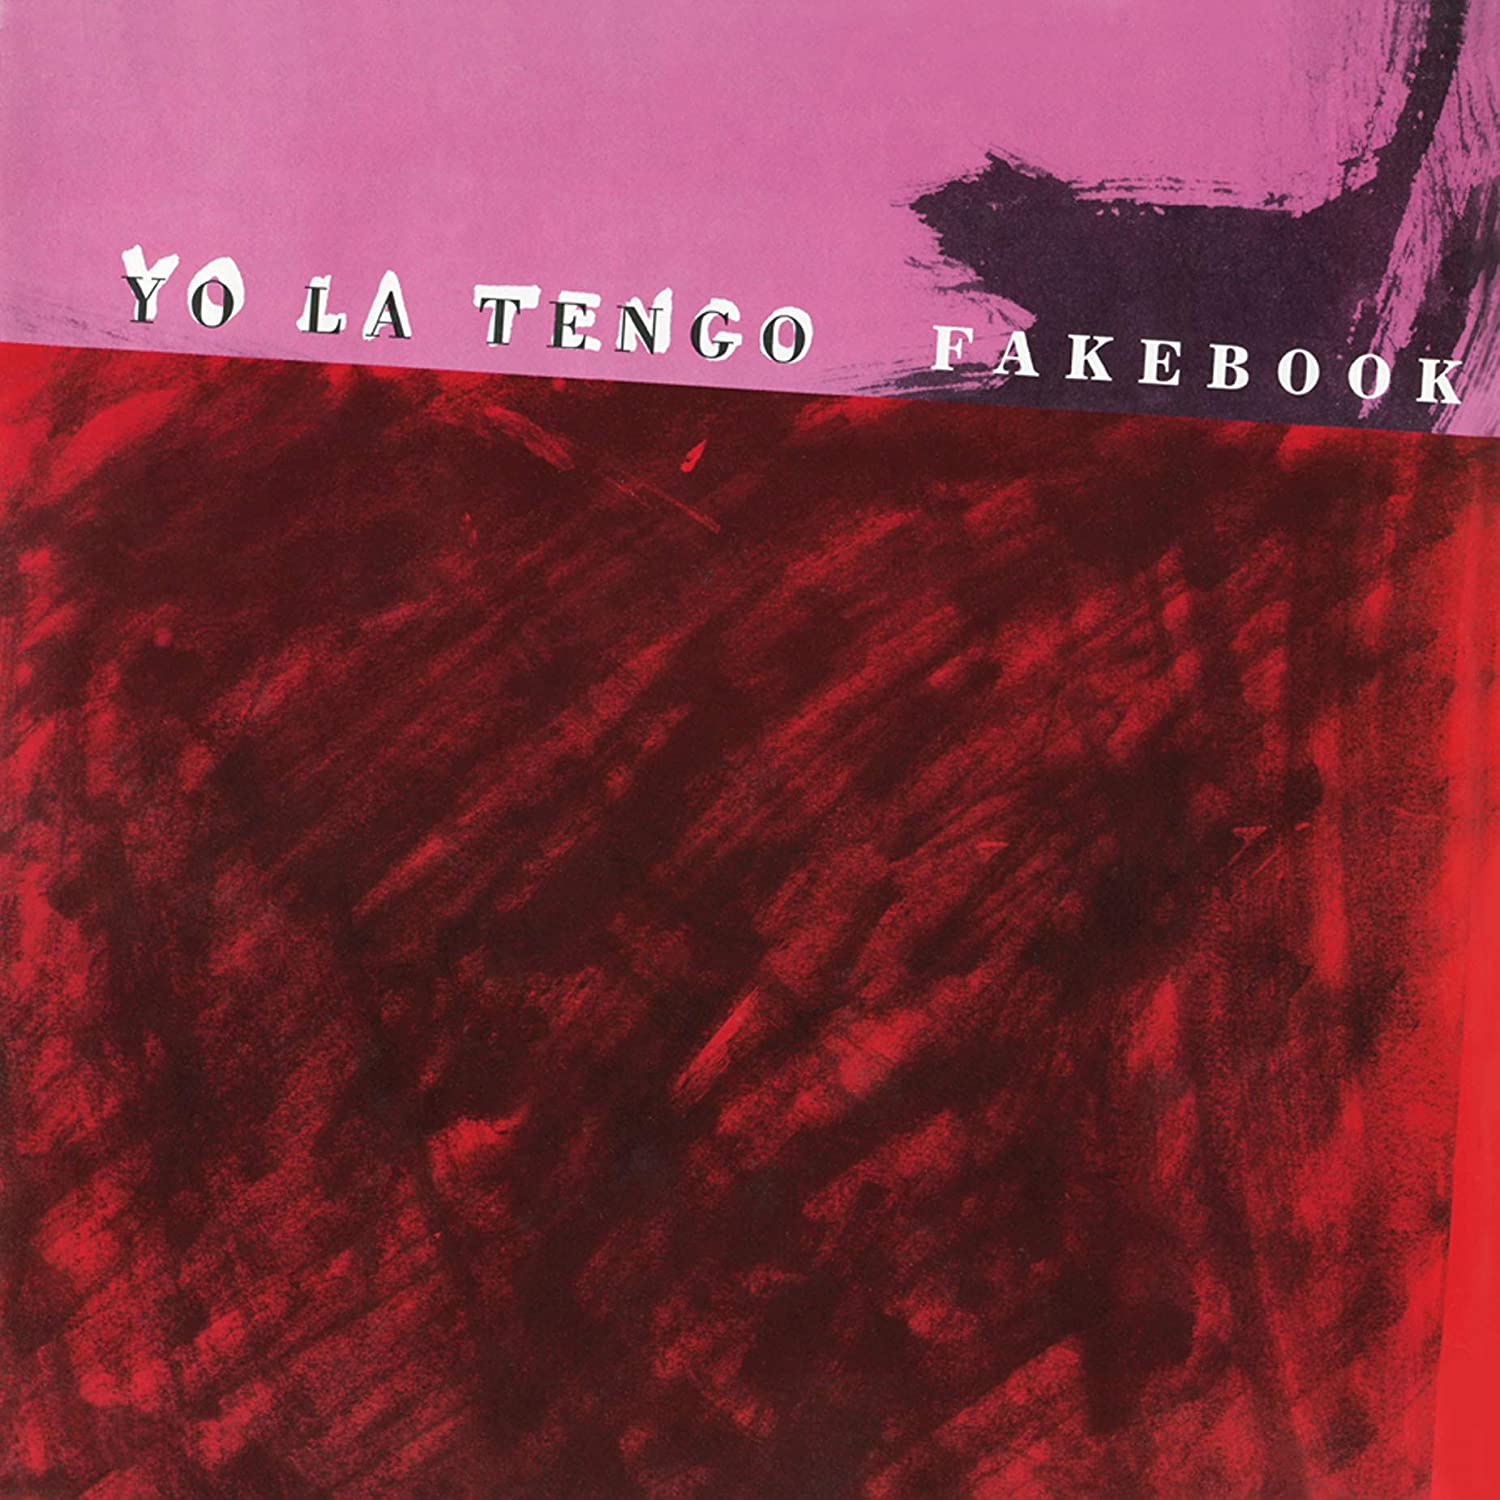 Yo La Tengo "Fakebook" LP